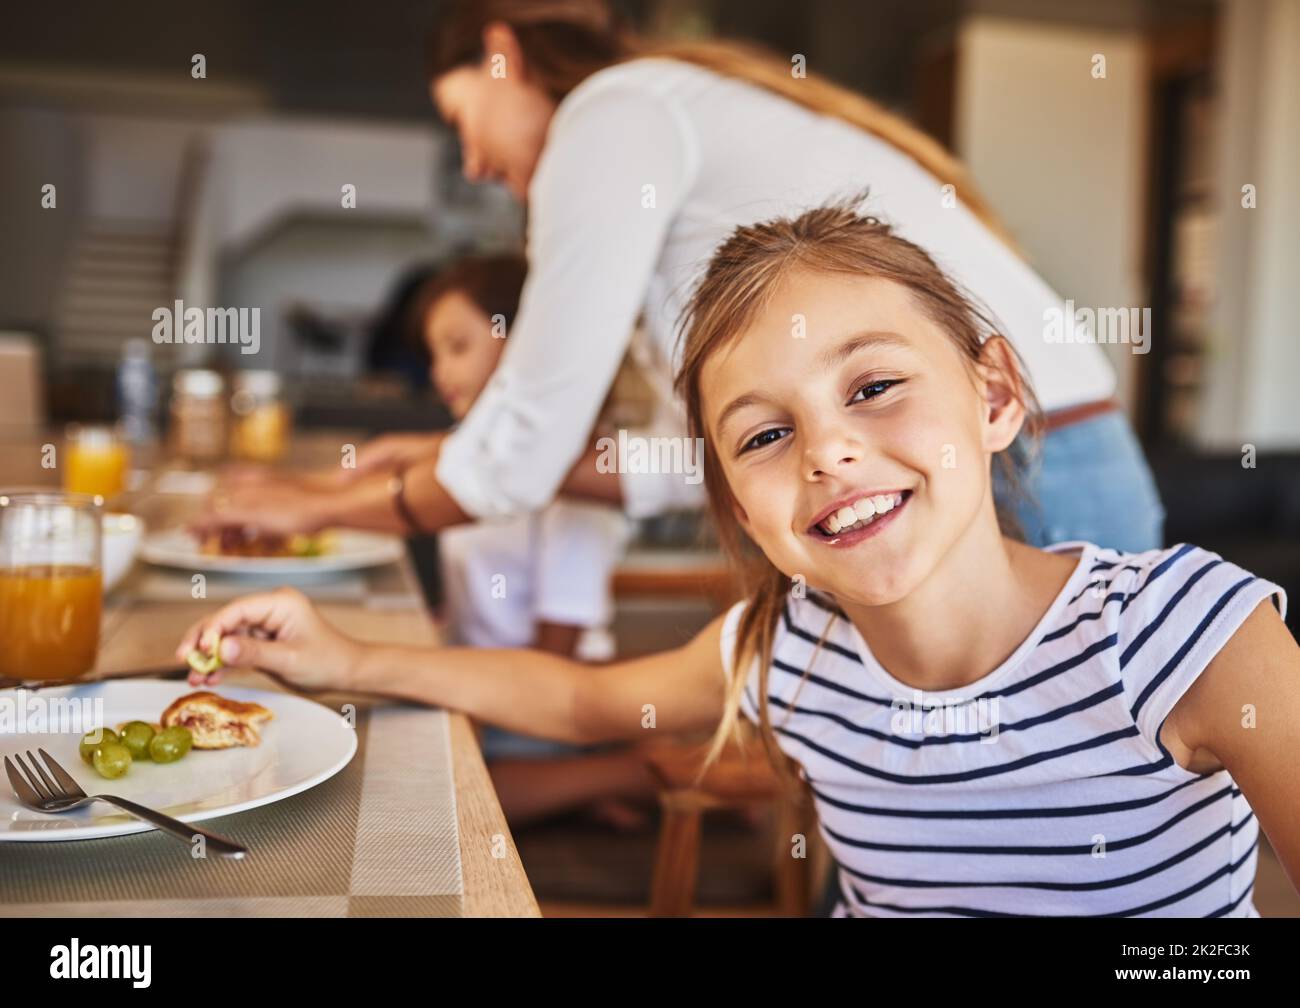 Genießen Sie ein köstliches Frühstück mit ihren Lieblingsmenschen. Portrait eines kleinen Mädchens, das im Hintergrund mit ihrer Familie frühstückt. Stockfoto